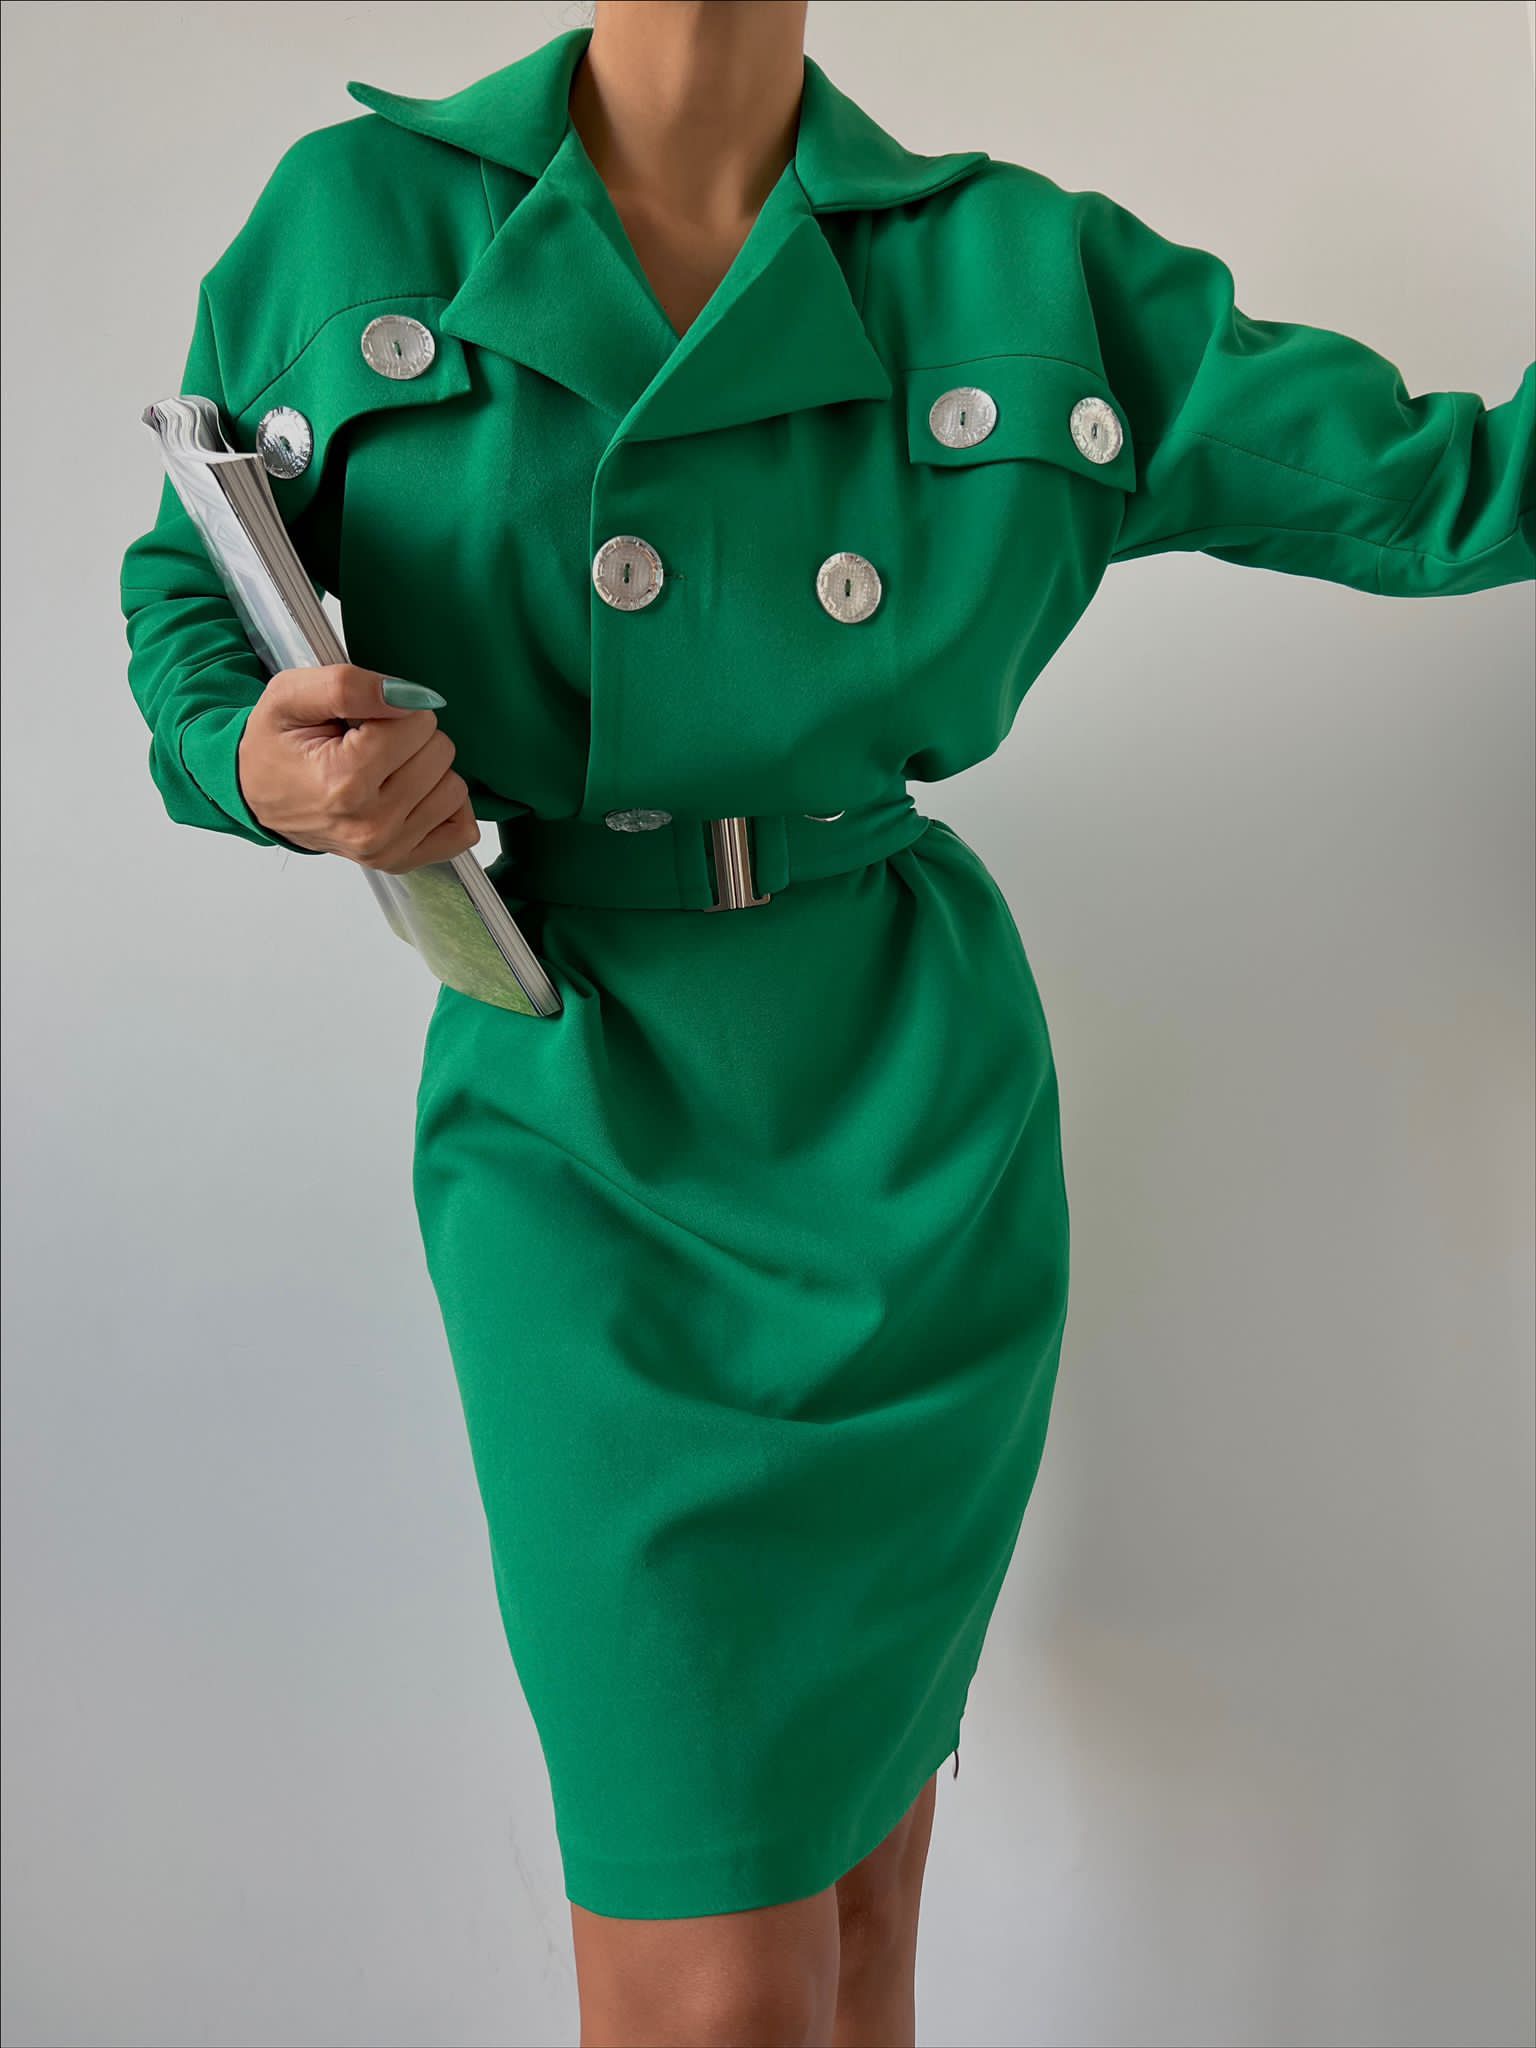 Дамска рокля BENI GREEN  https://bvseductive.com/products/womans-s-dresses-beni-green  елегантна рокля в зелен цвят съставена от приятна на допир материя с вталена кройка, подчертаваща силуета страхотен избор за ослепителна визия 100% ...полиестер